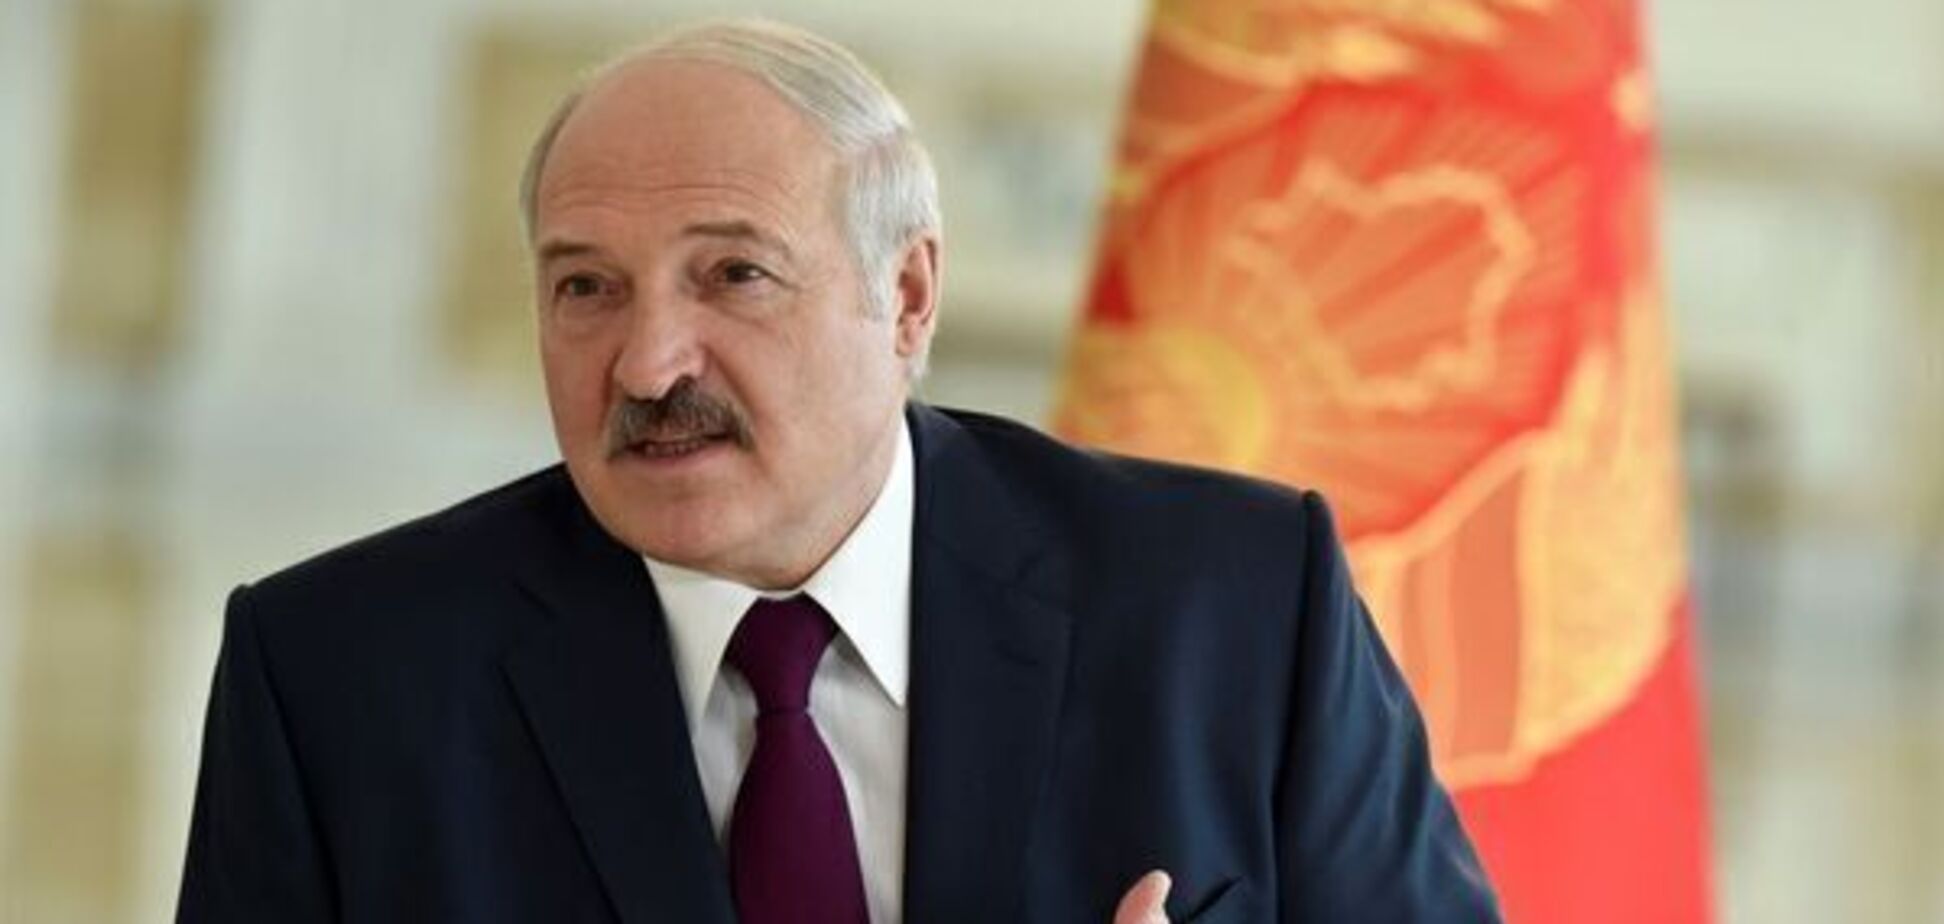 'Це просто смішно!' Лукашенко пригрозив США через танки біля кордону